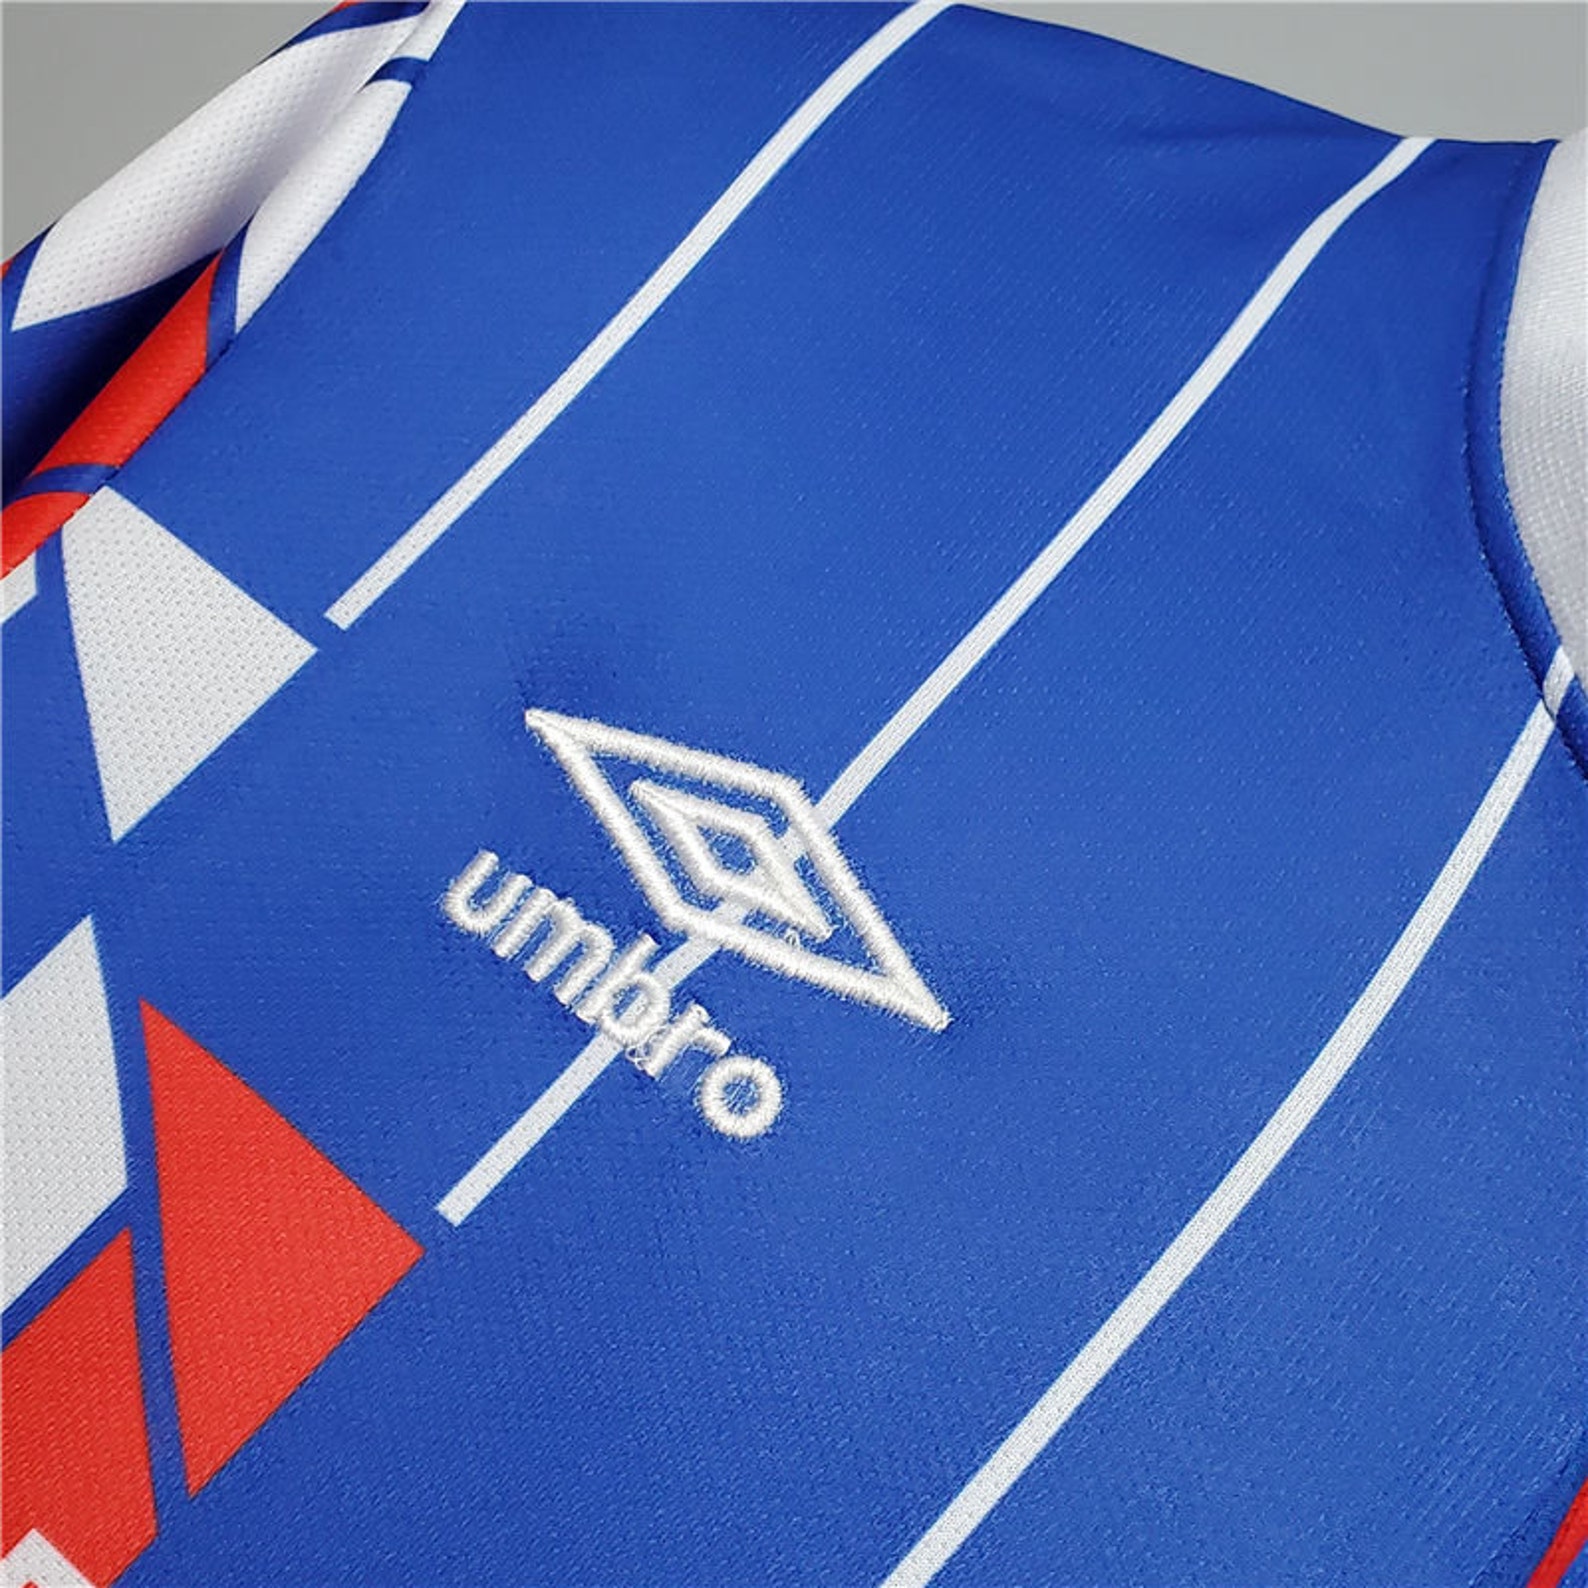 Ajax 1990 Away Retro football kit jersey | Etsy